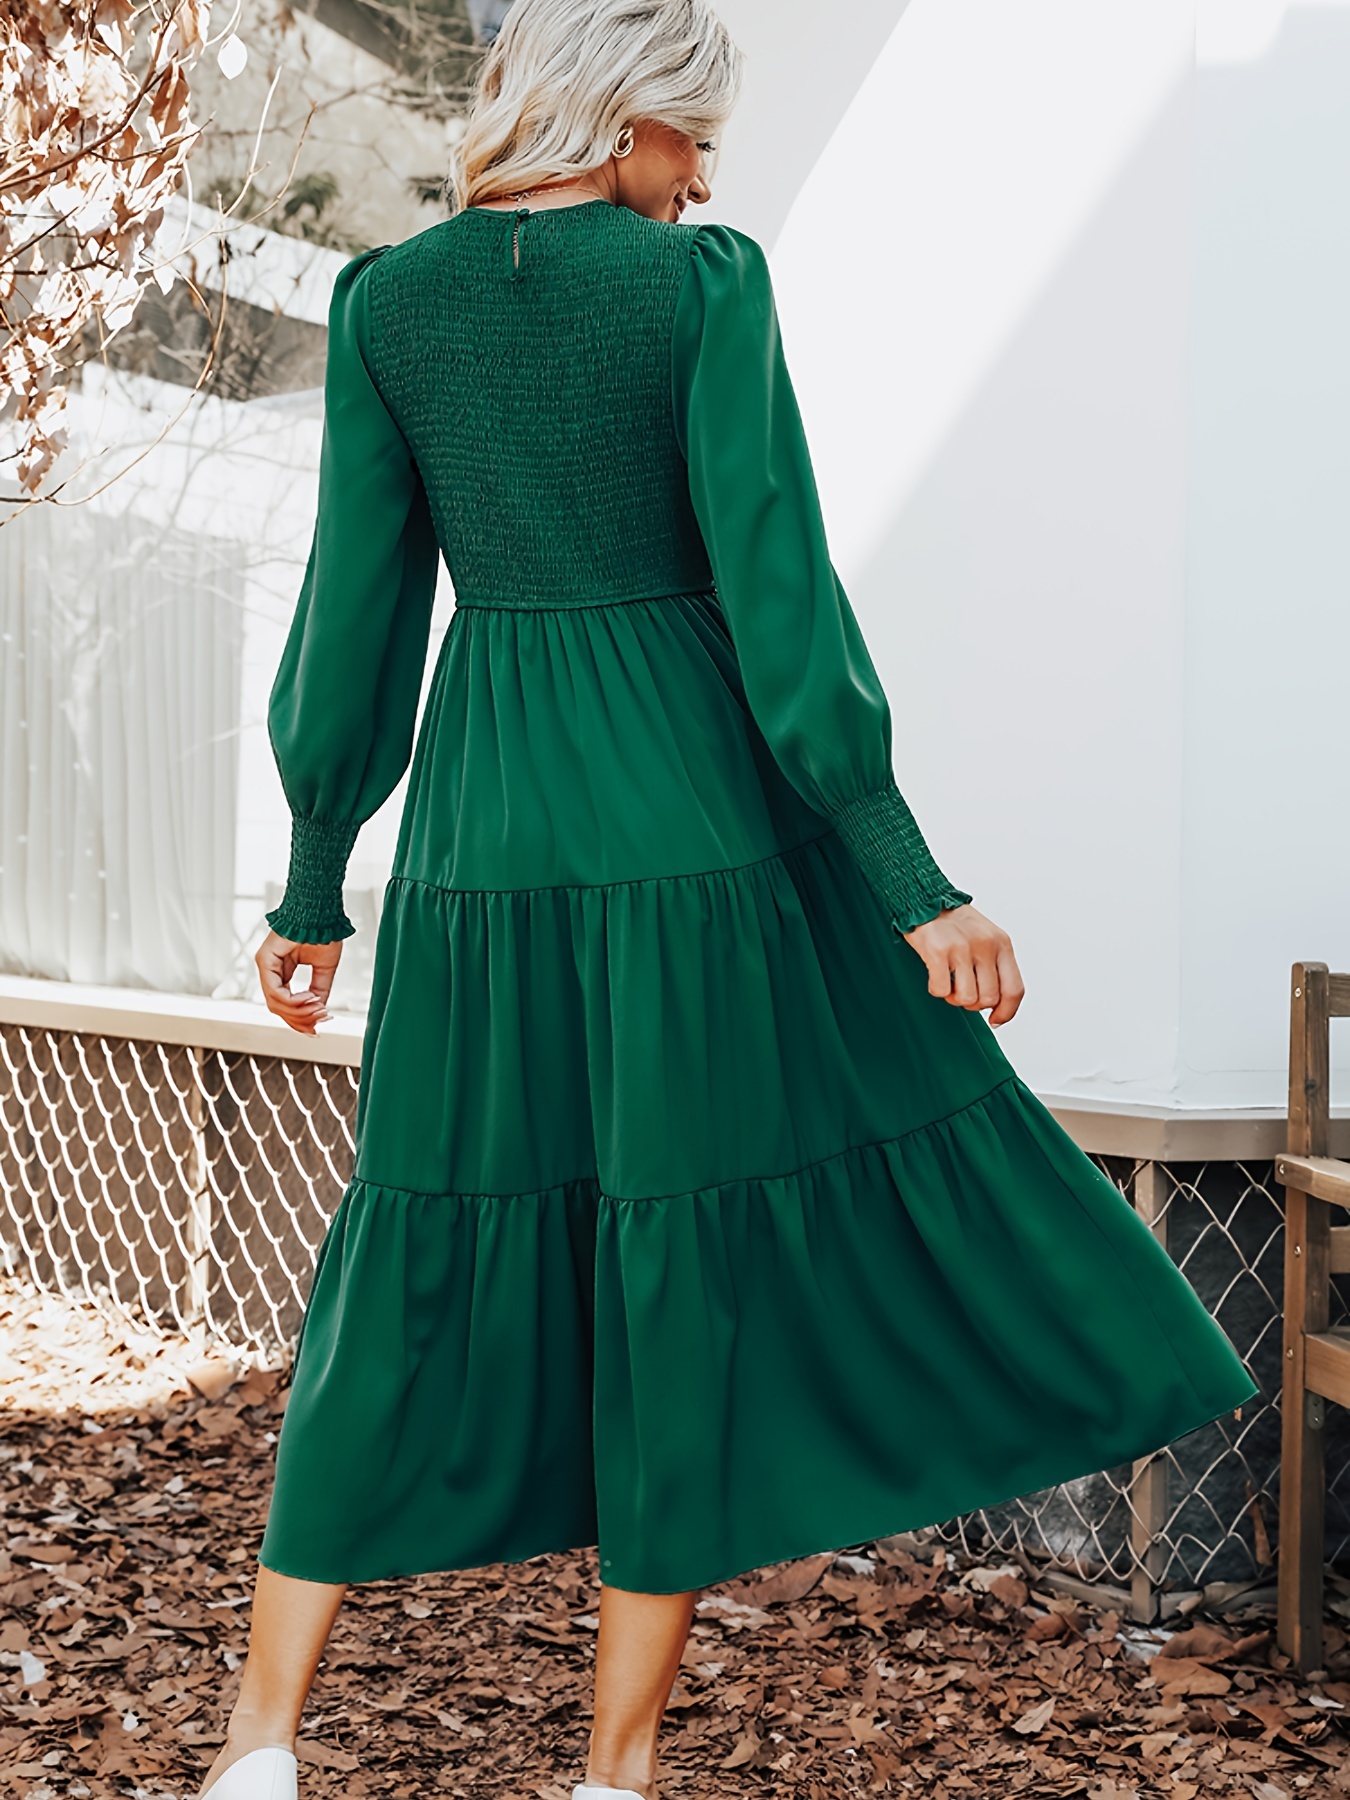 Estes são os vestidos largos mais bonitos que vai encontrar nas coleções de  outono e que ficam bem a todas as mulheres - Indica - FLASH!